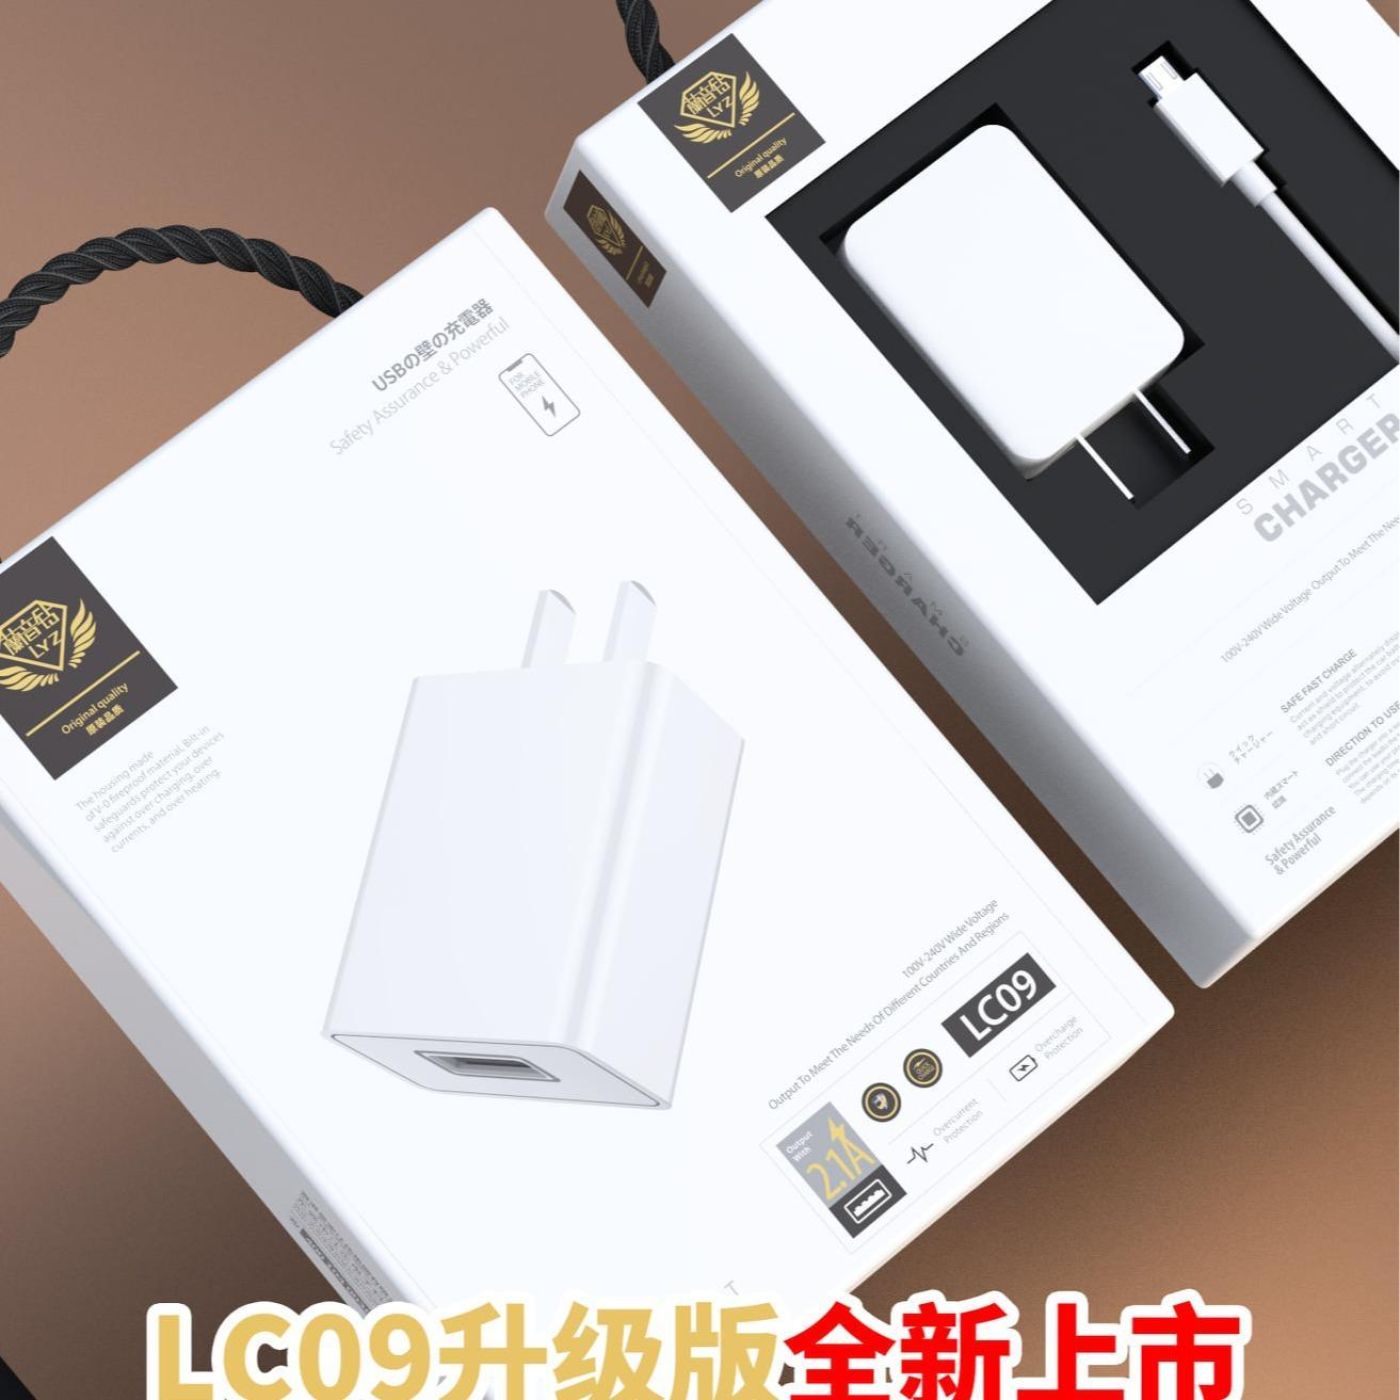 Bộ Sạc LYZ LC09-2.4A-Ios Sử Dụng Cho Dòng Điện Thoại Iphone